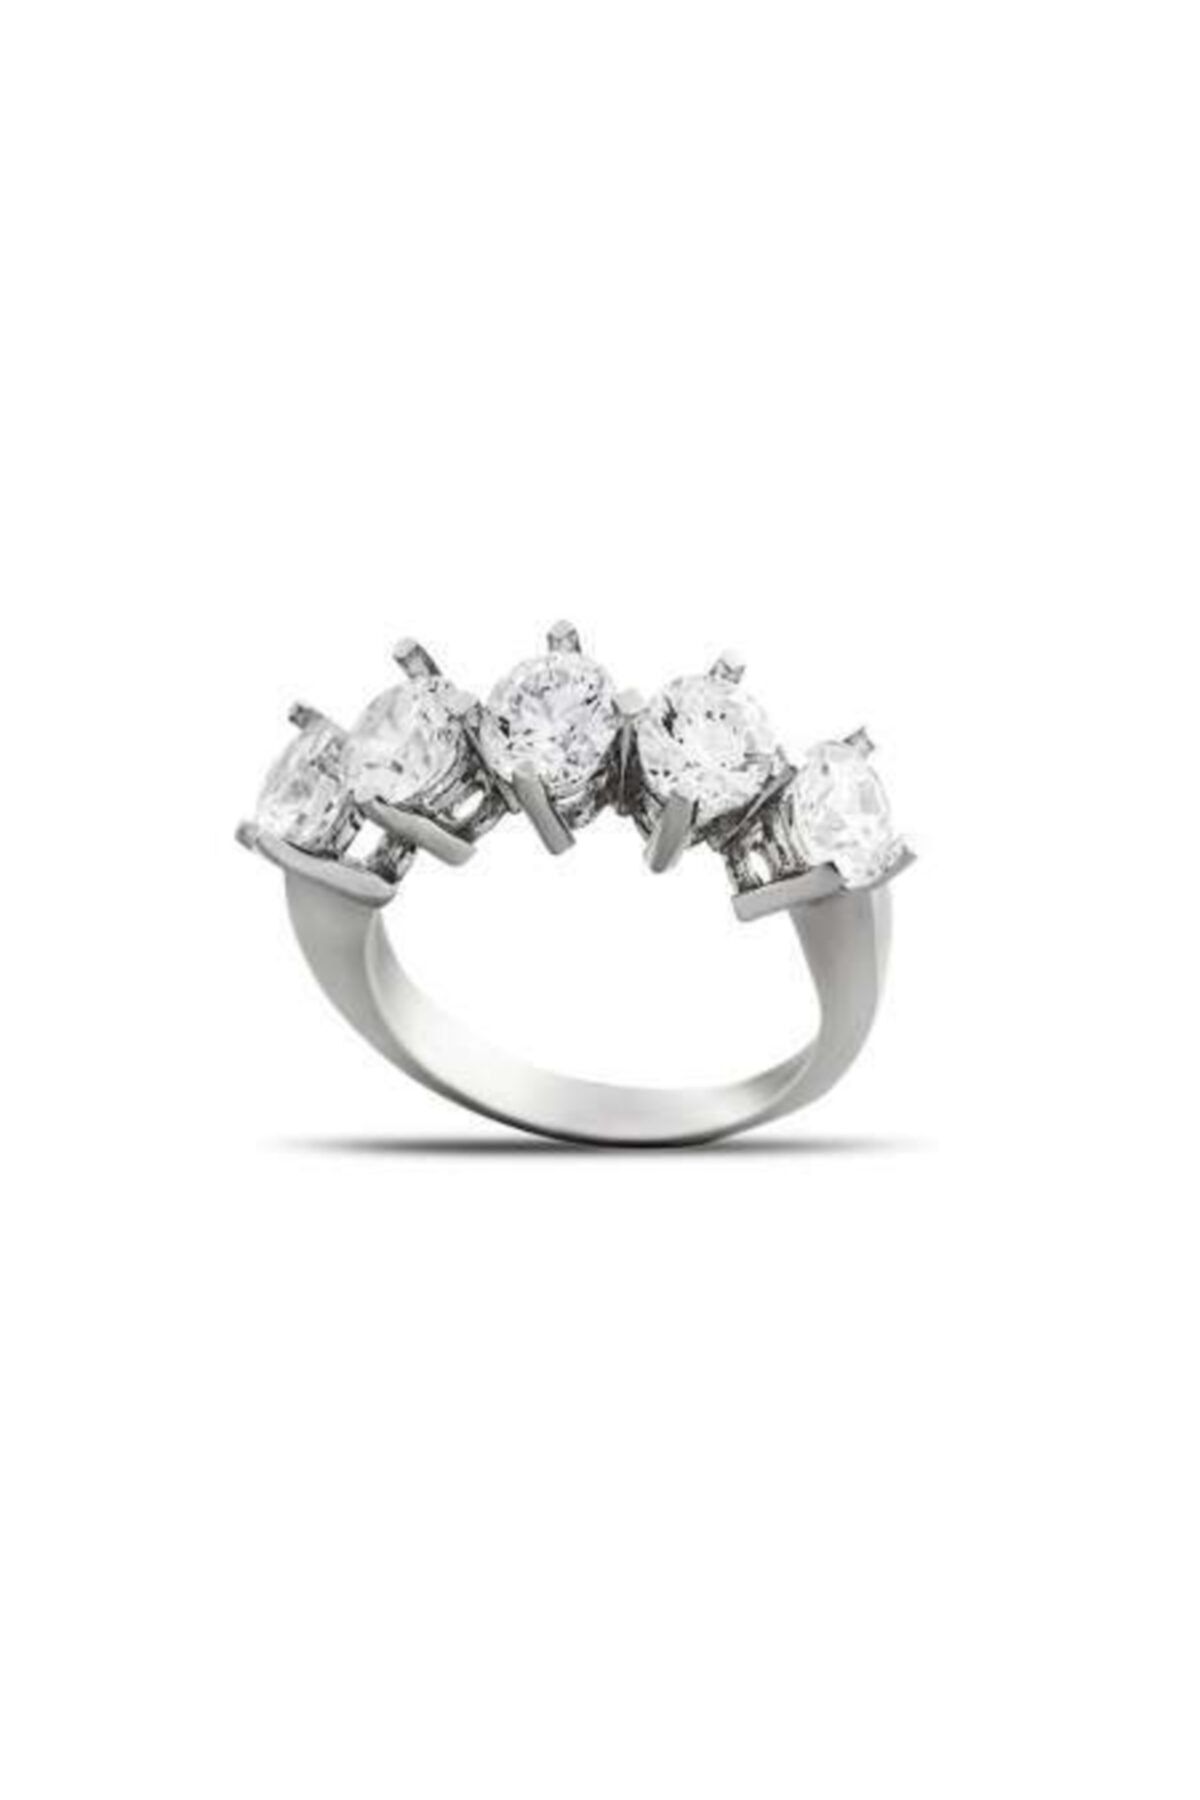 Tesbihane Kadın Starlight Diamond Pırlanta Montür Klasik Tasarım 925 Ayar Gümüş  Beştaş Yüzük